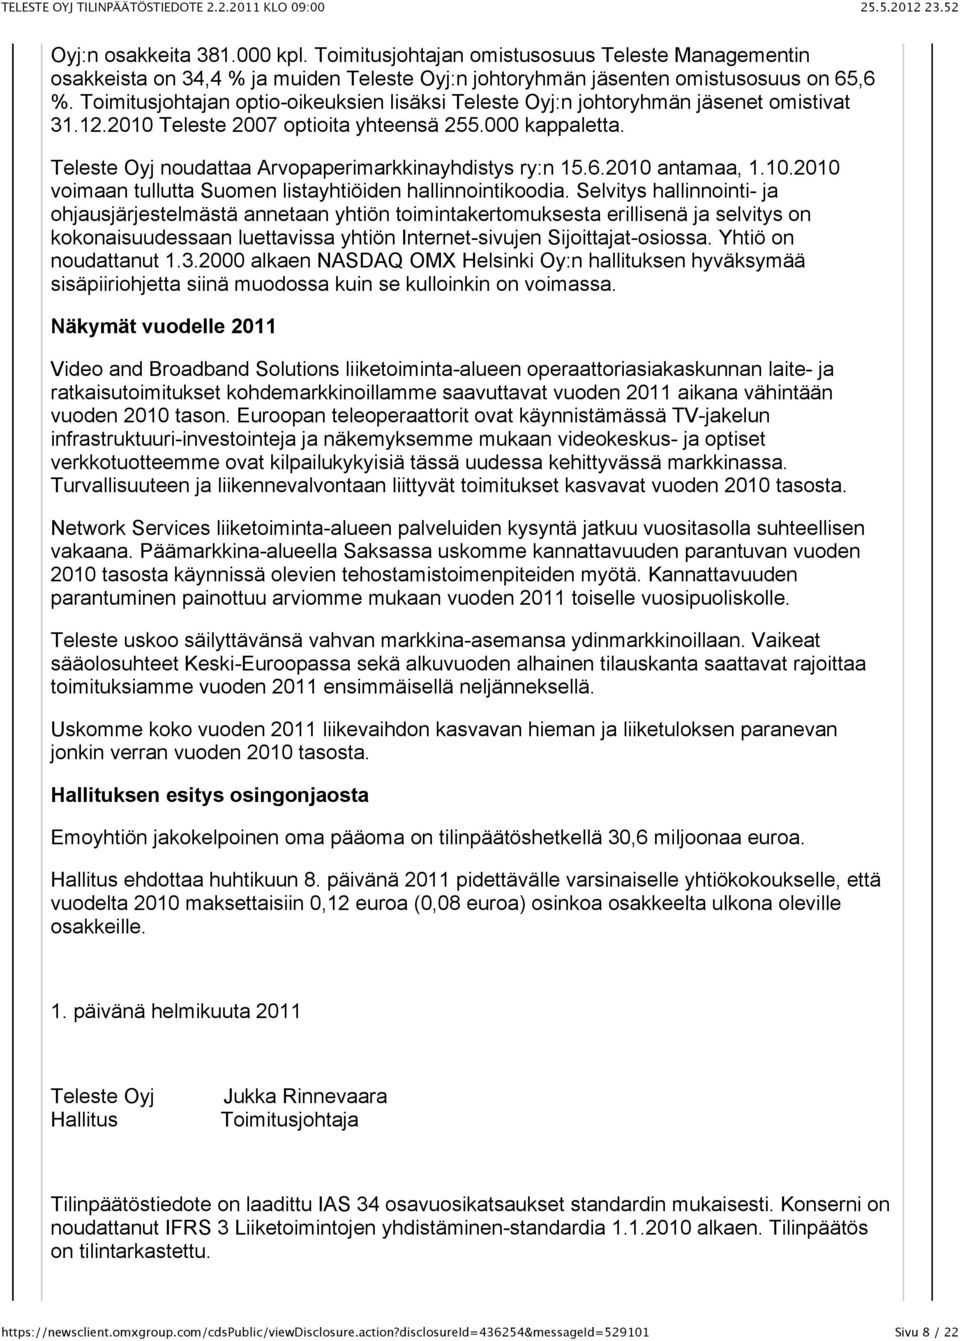 Teleste Oyj noudattaa Arvopaperimarkkinayhdistys ry:n 15.6.2010 antamaa, 1.10.2010 voimaan tullutta Suomen listayhtiöiden hallinnointikoodia.